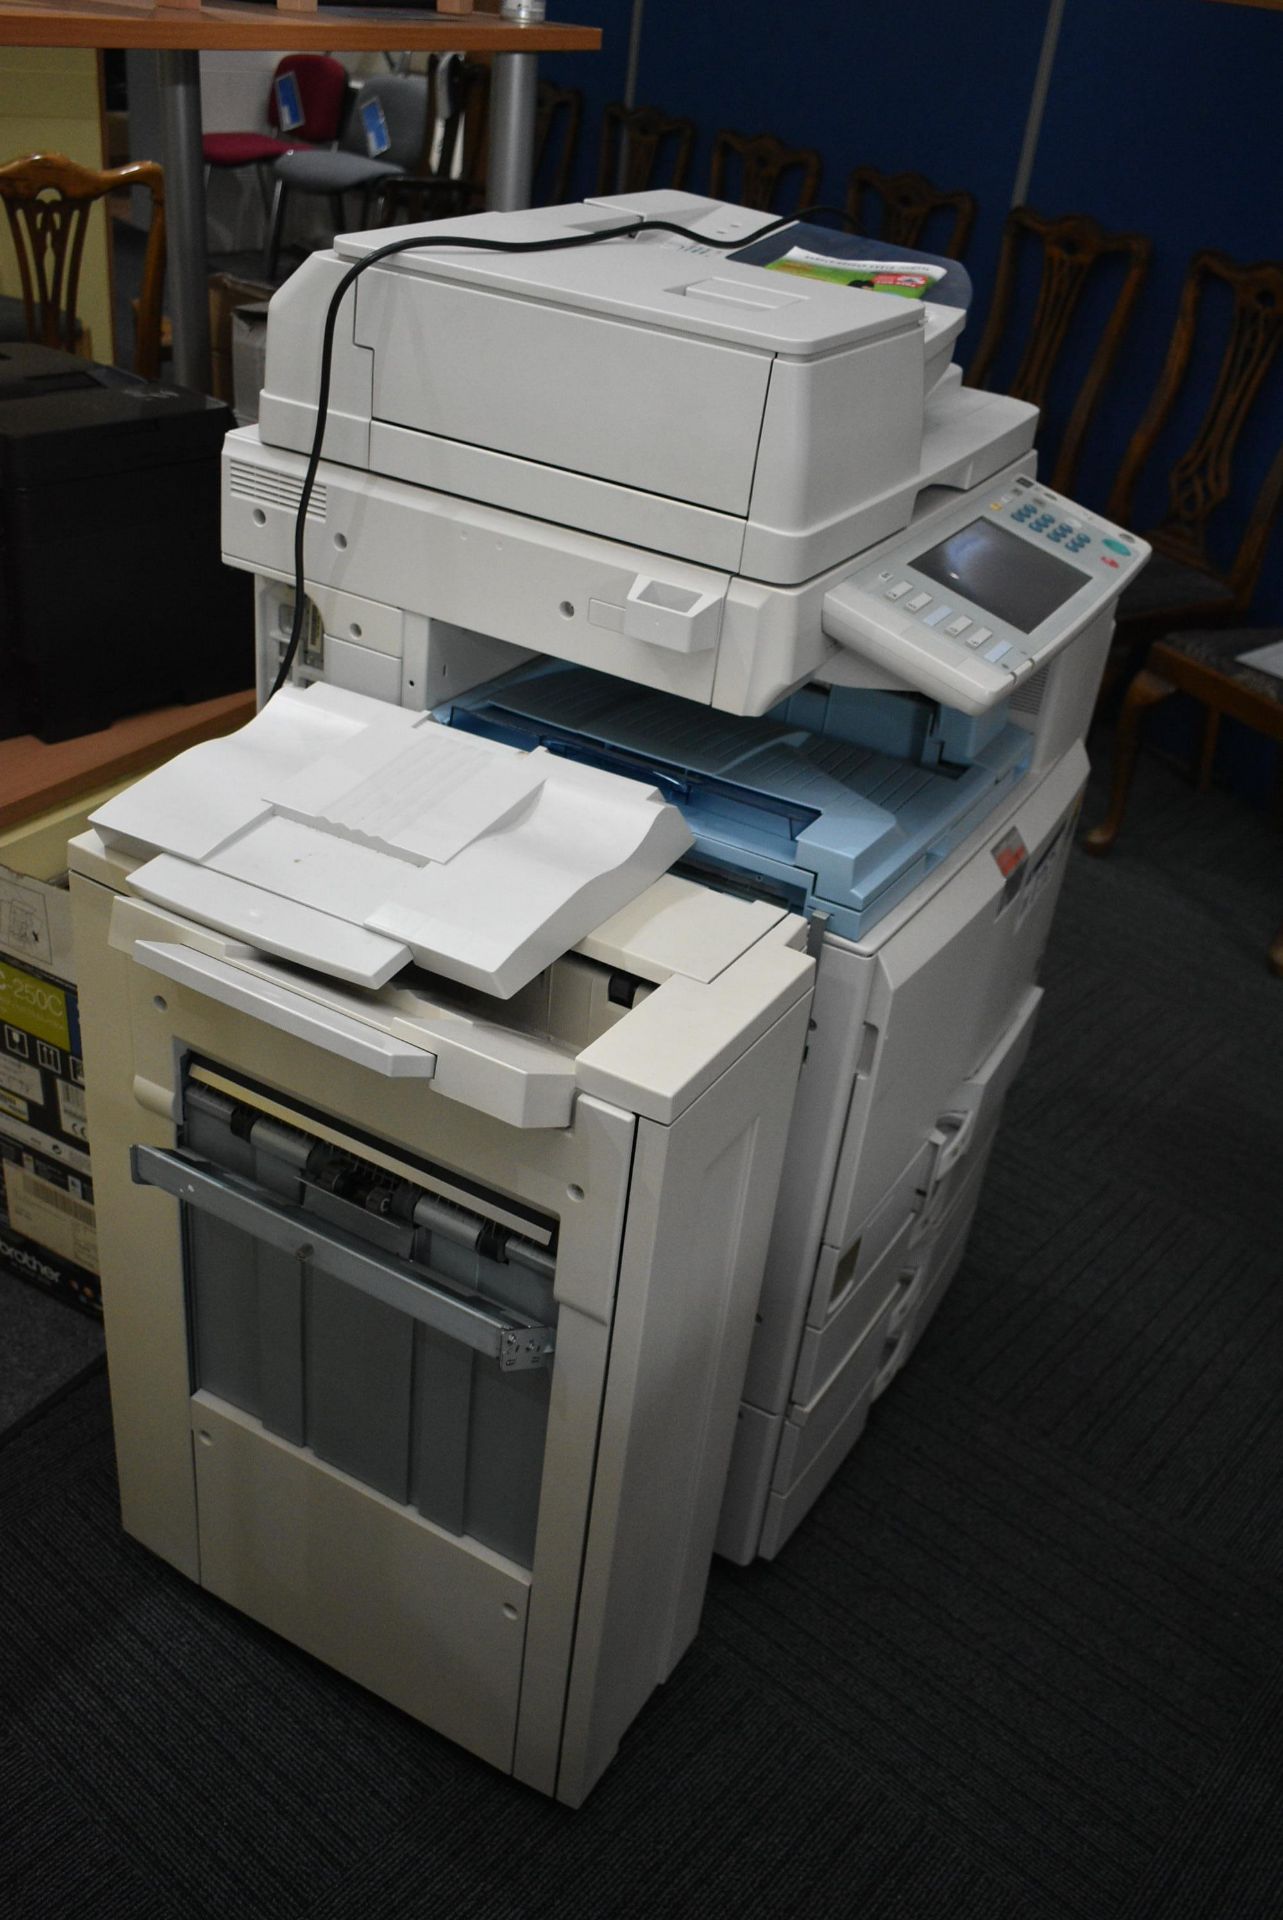 Infotec MPC5501 Photocopier, serial no. V961340013 - Image 4 of 4